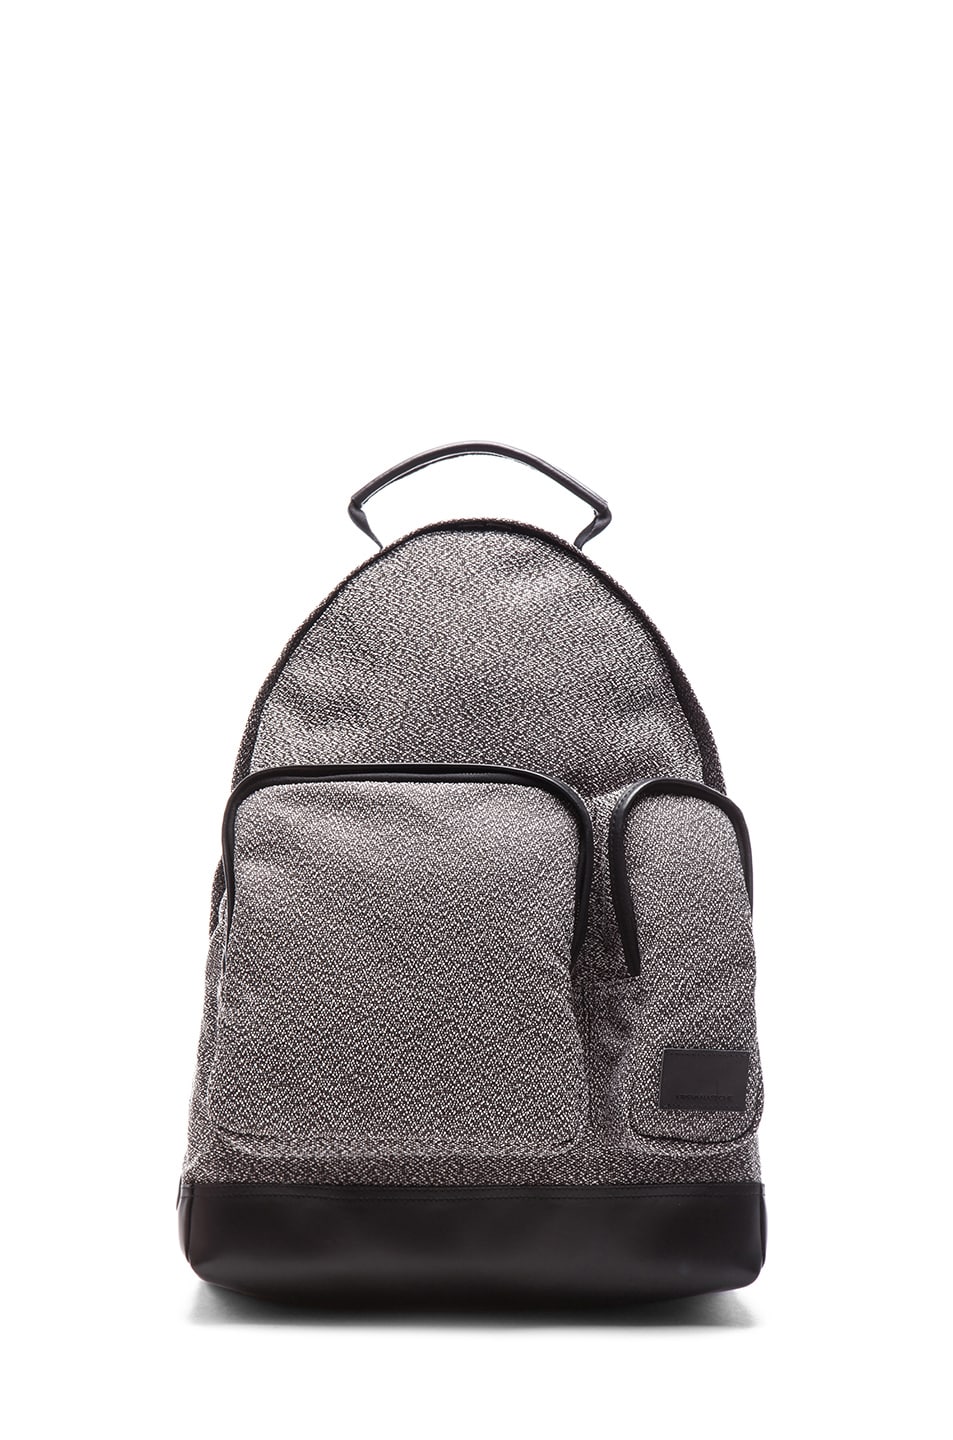 Image 1 of Kris Van Assche Backpack in Black & White